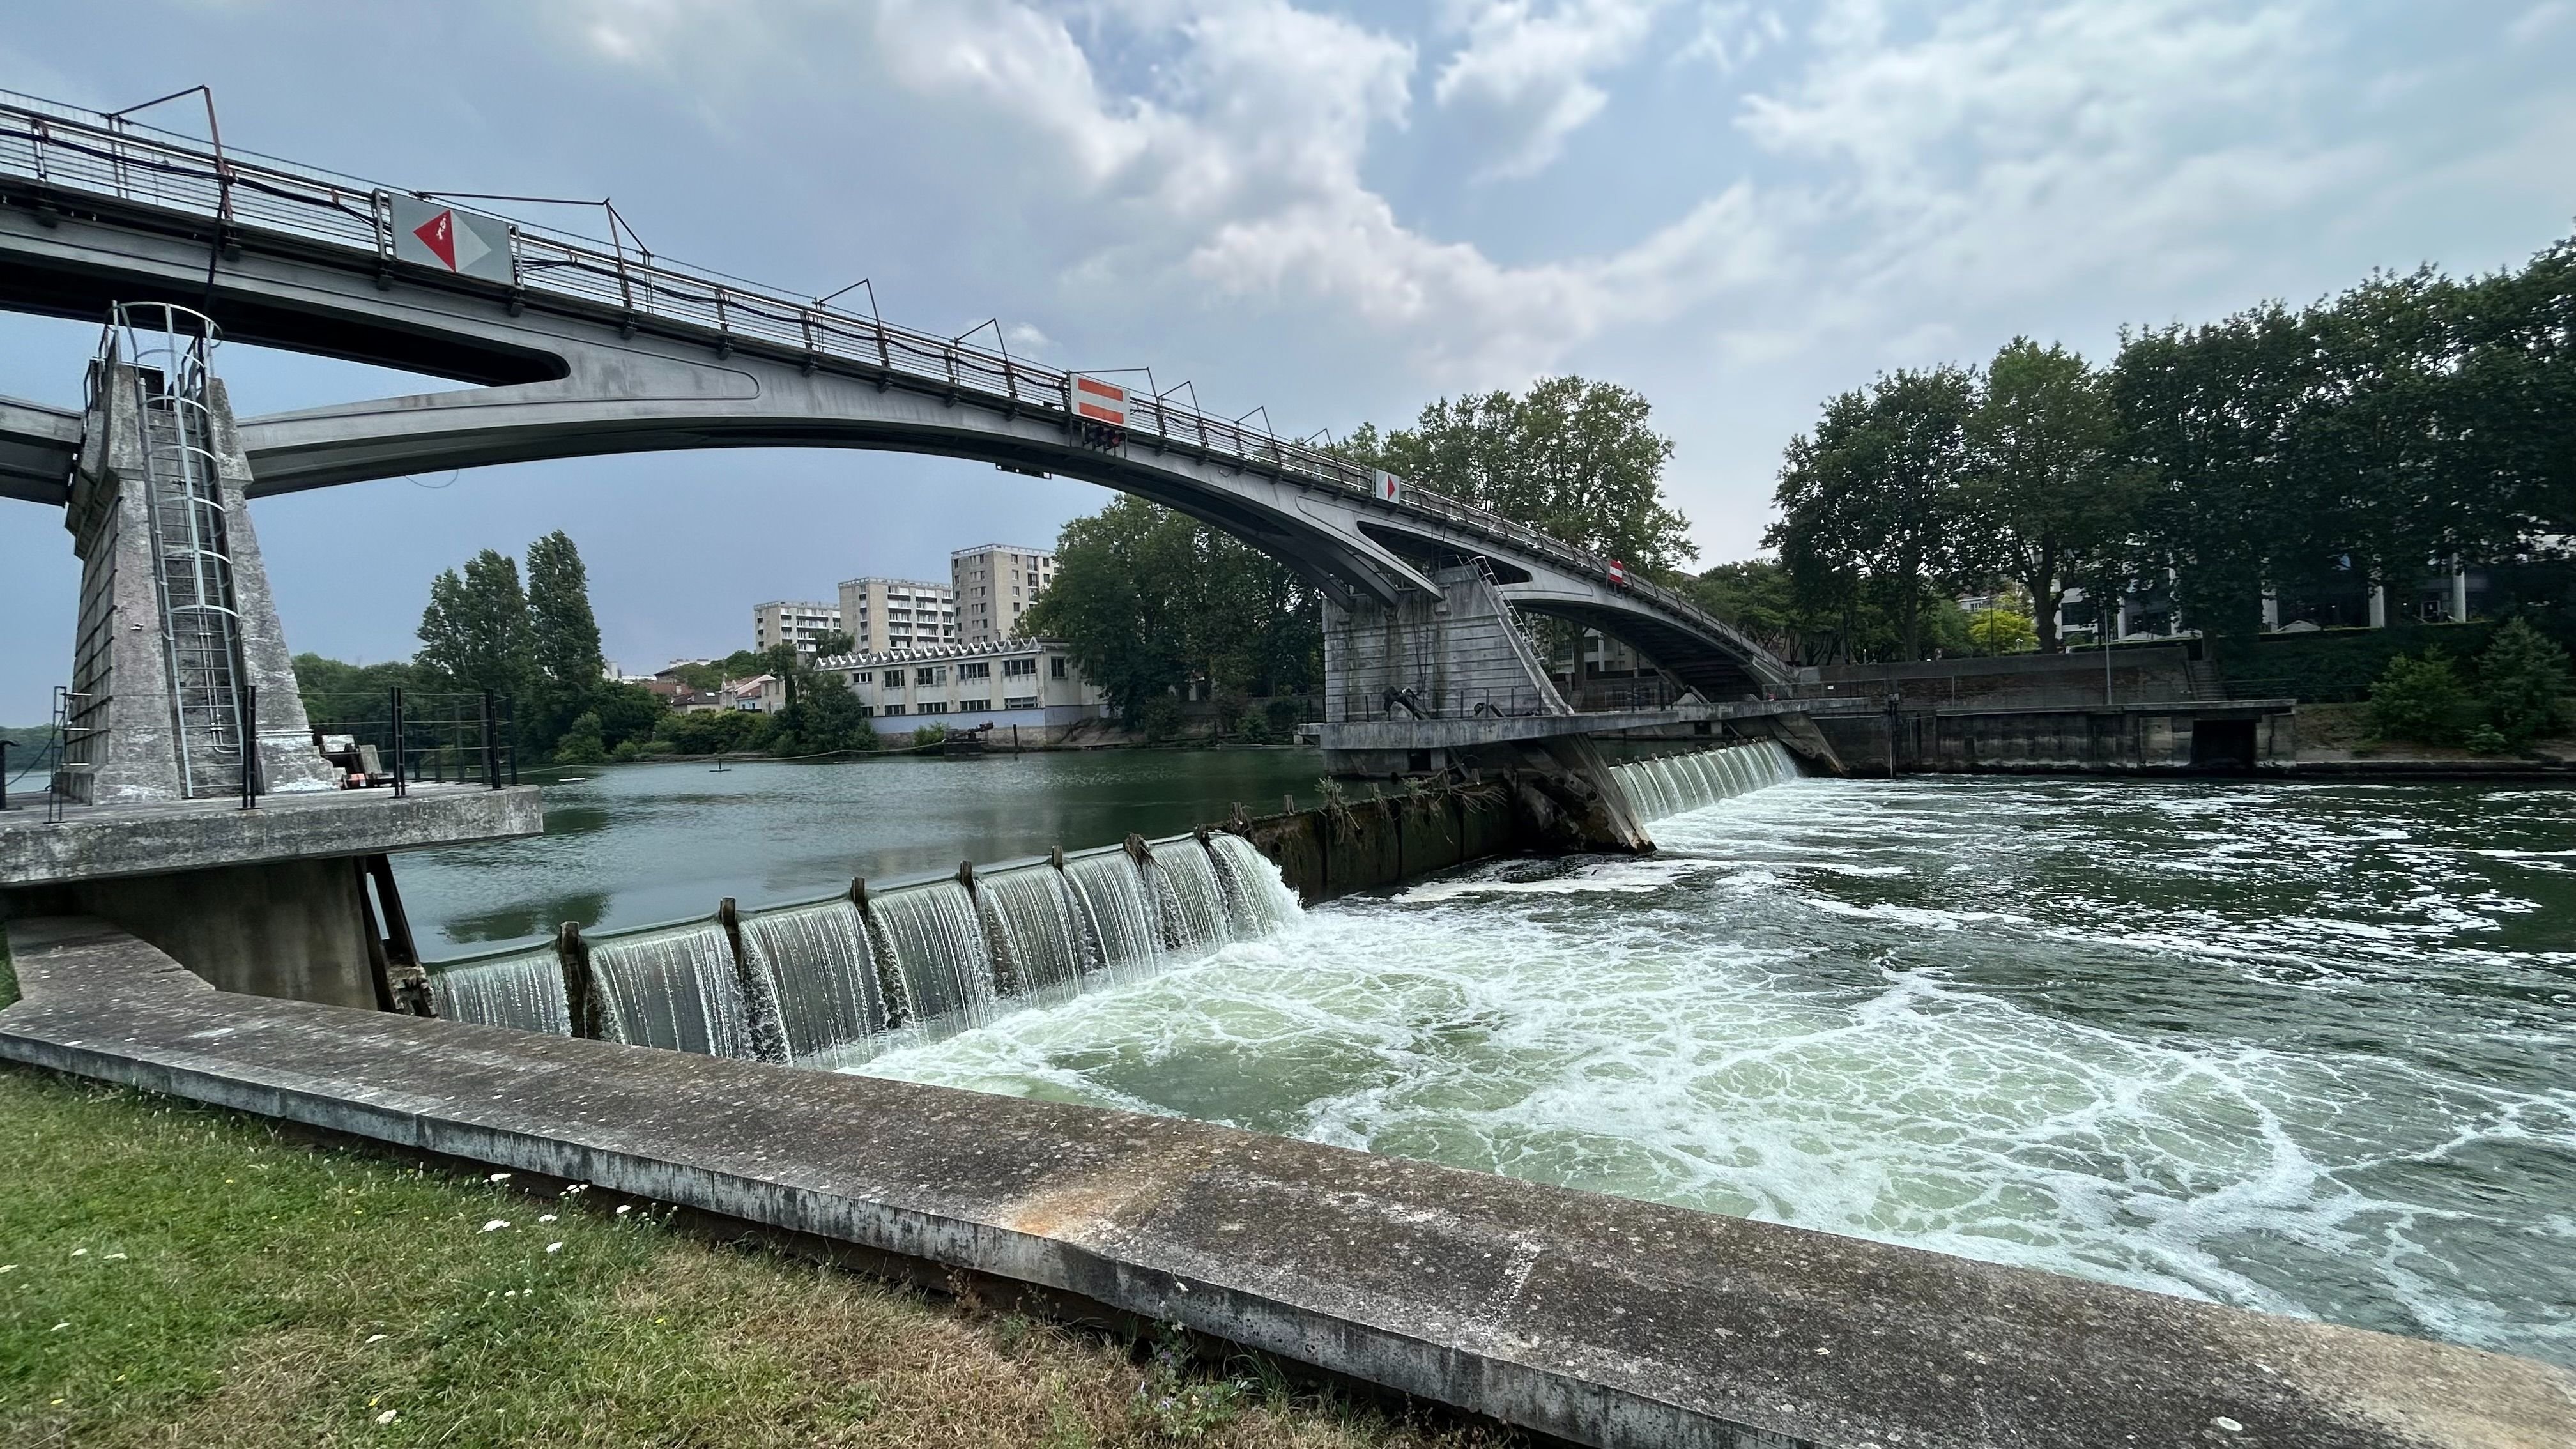 Maisons-Alfort. Les parties mobiles du barrage dit de Saint-Maurice sont rénovées une par une pour ne pas stopper complètement son fonctionnement. LP/Zena Serhal